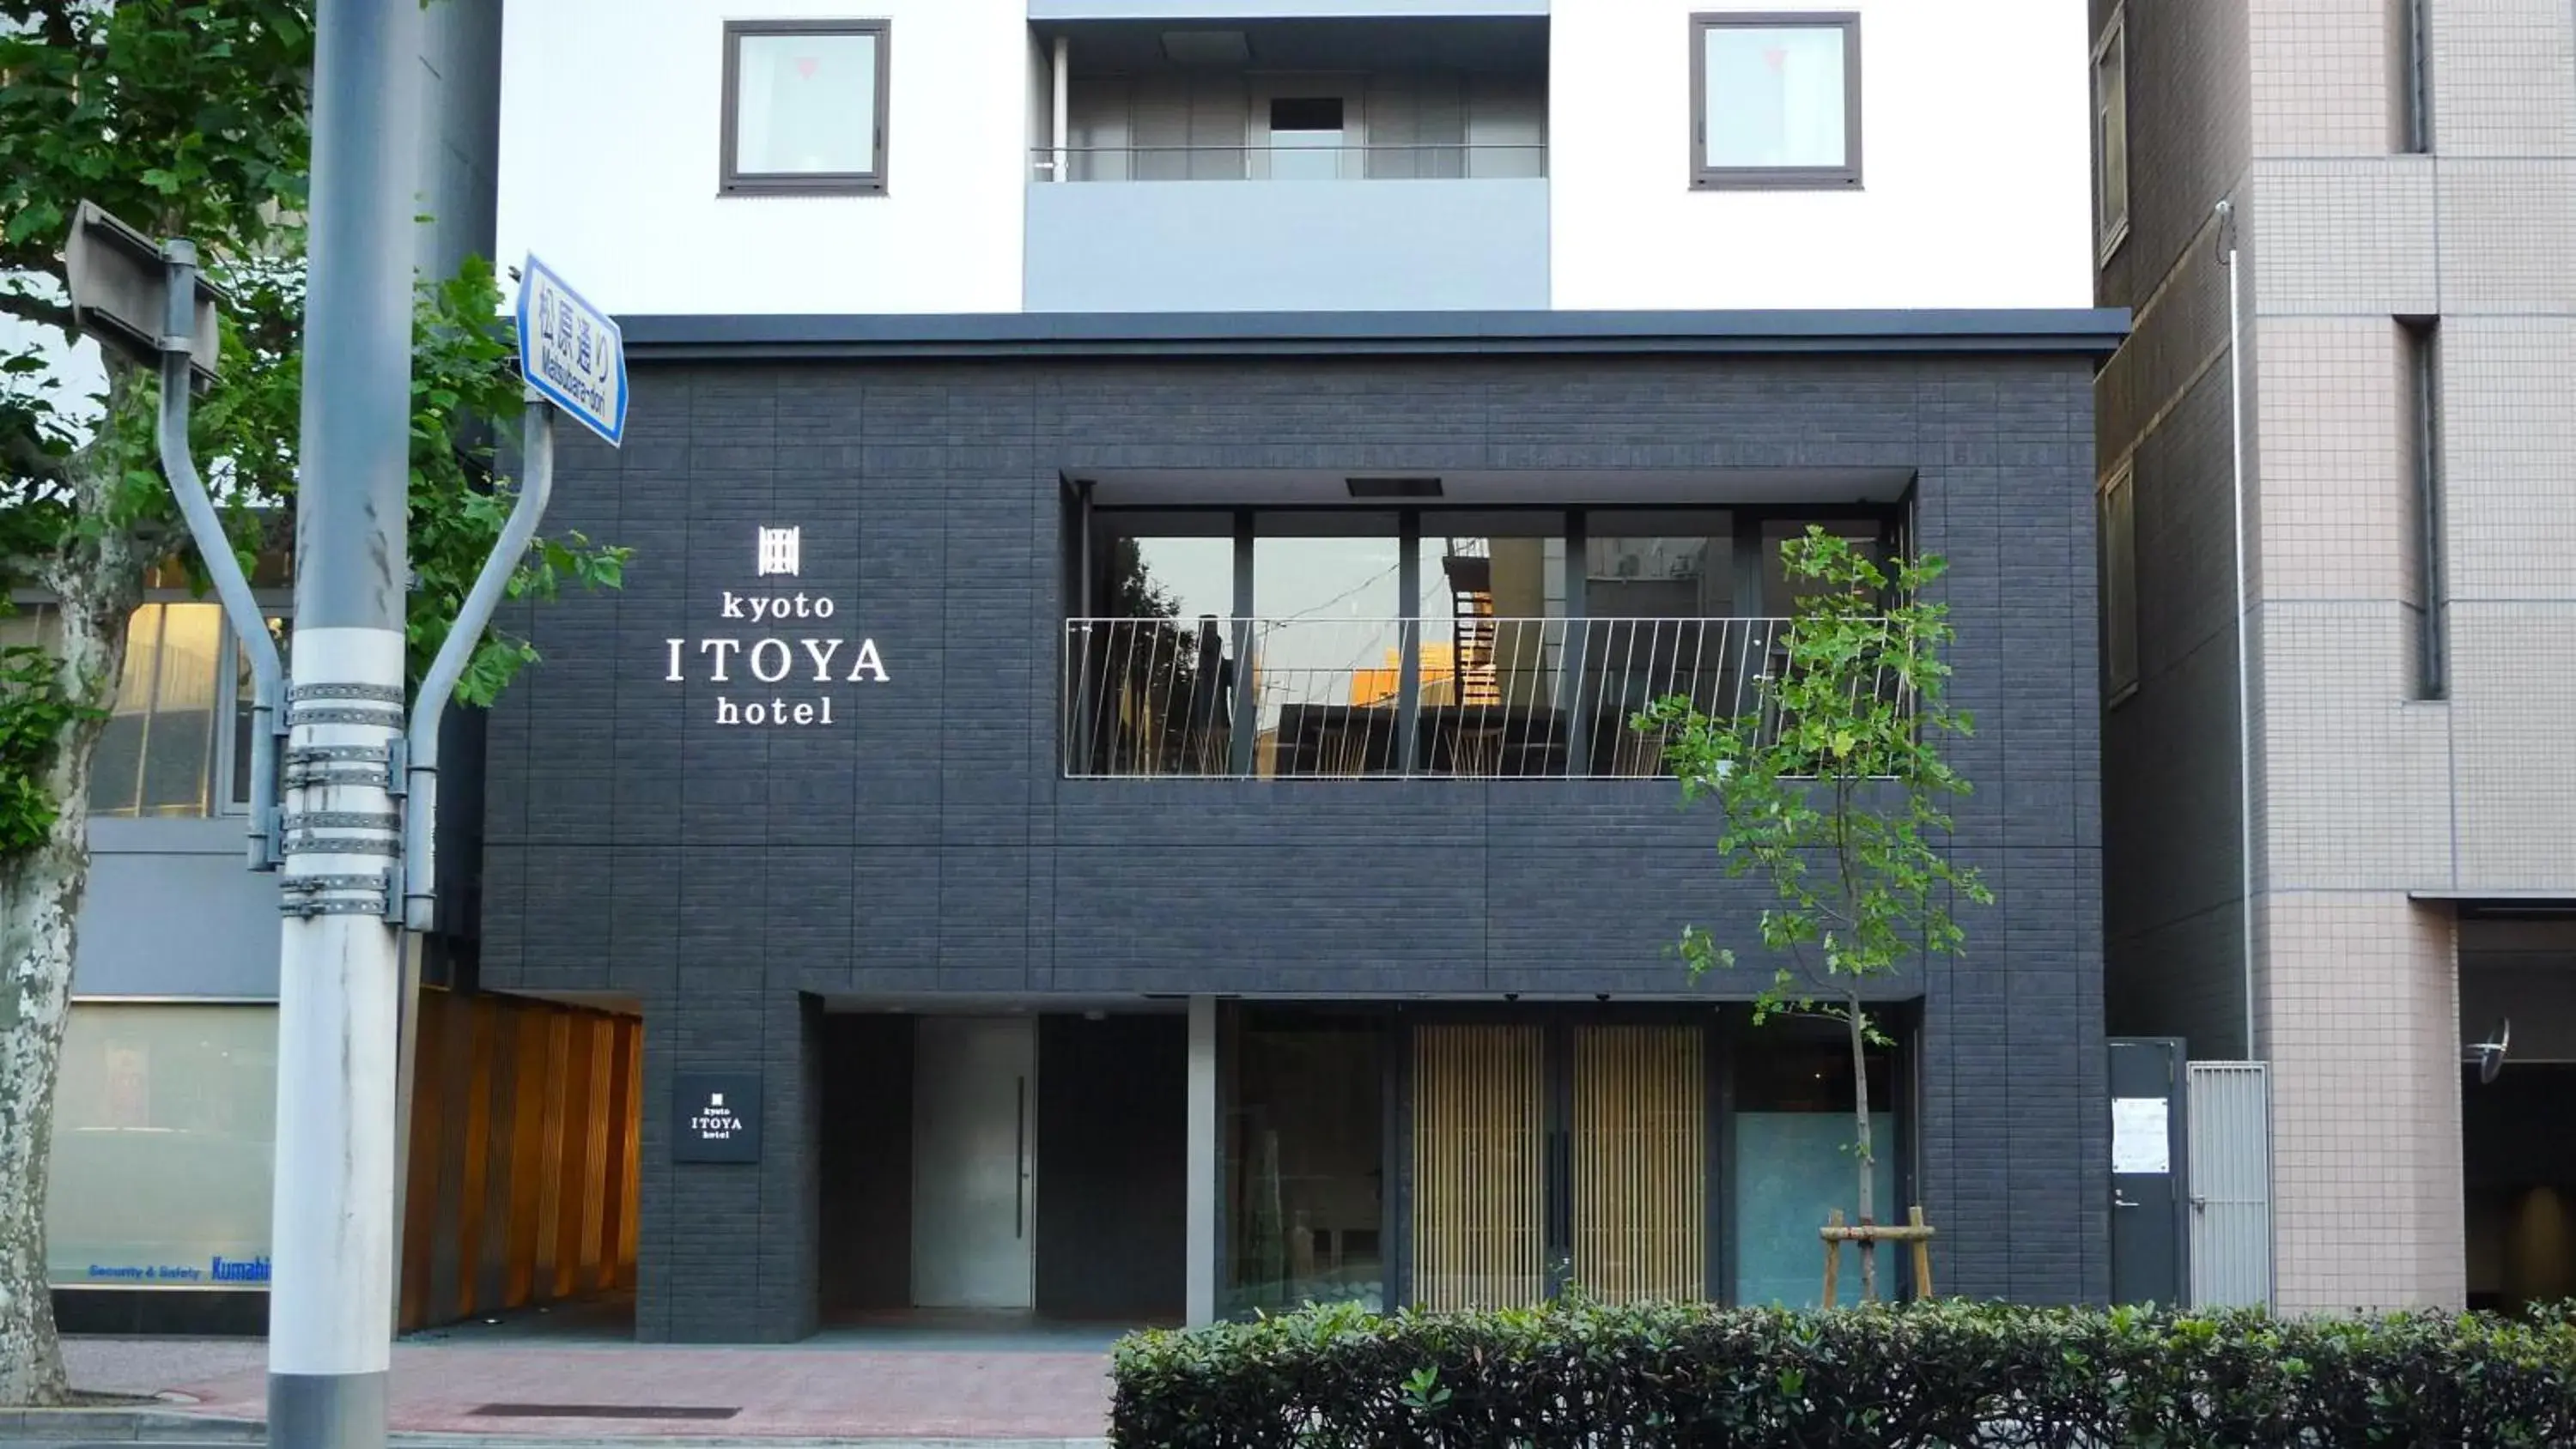 Facade/entrance, Property Building in Kyoto Itoya Hotel